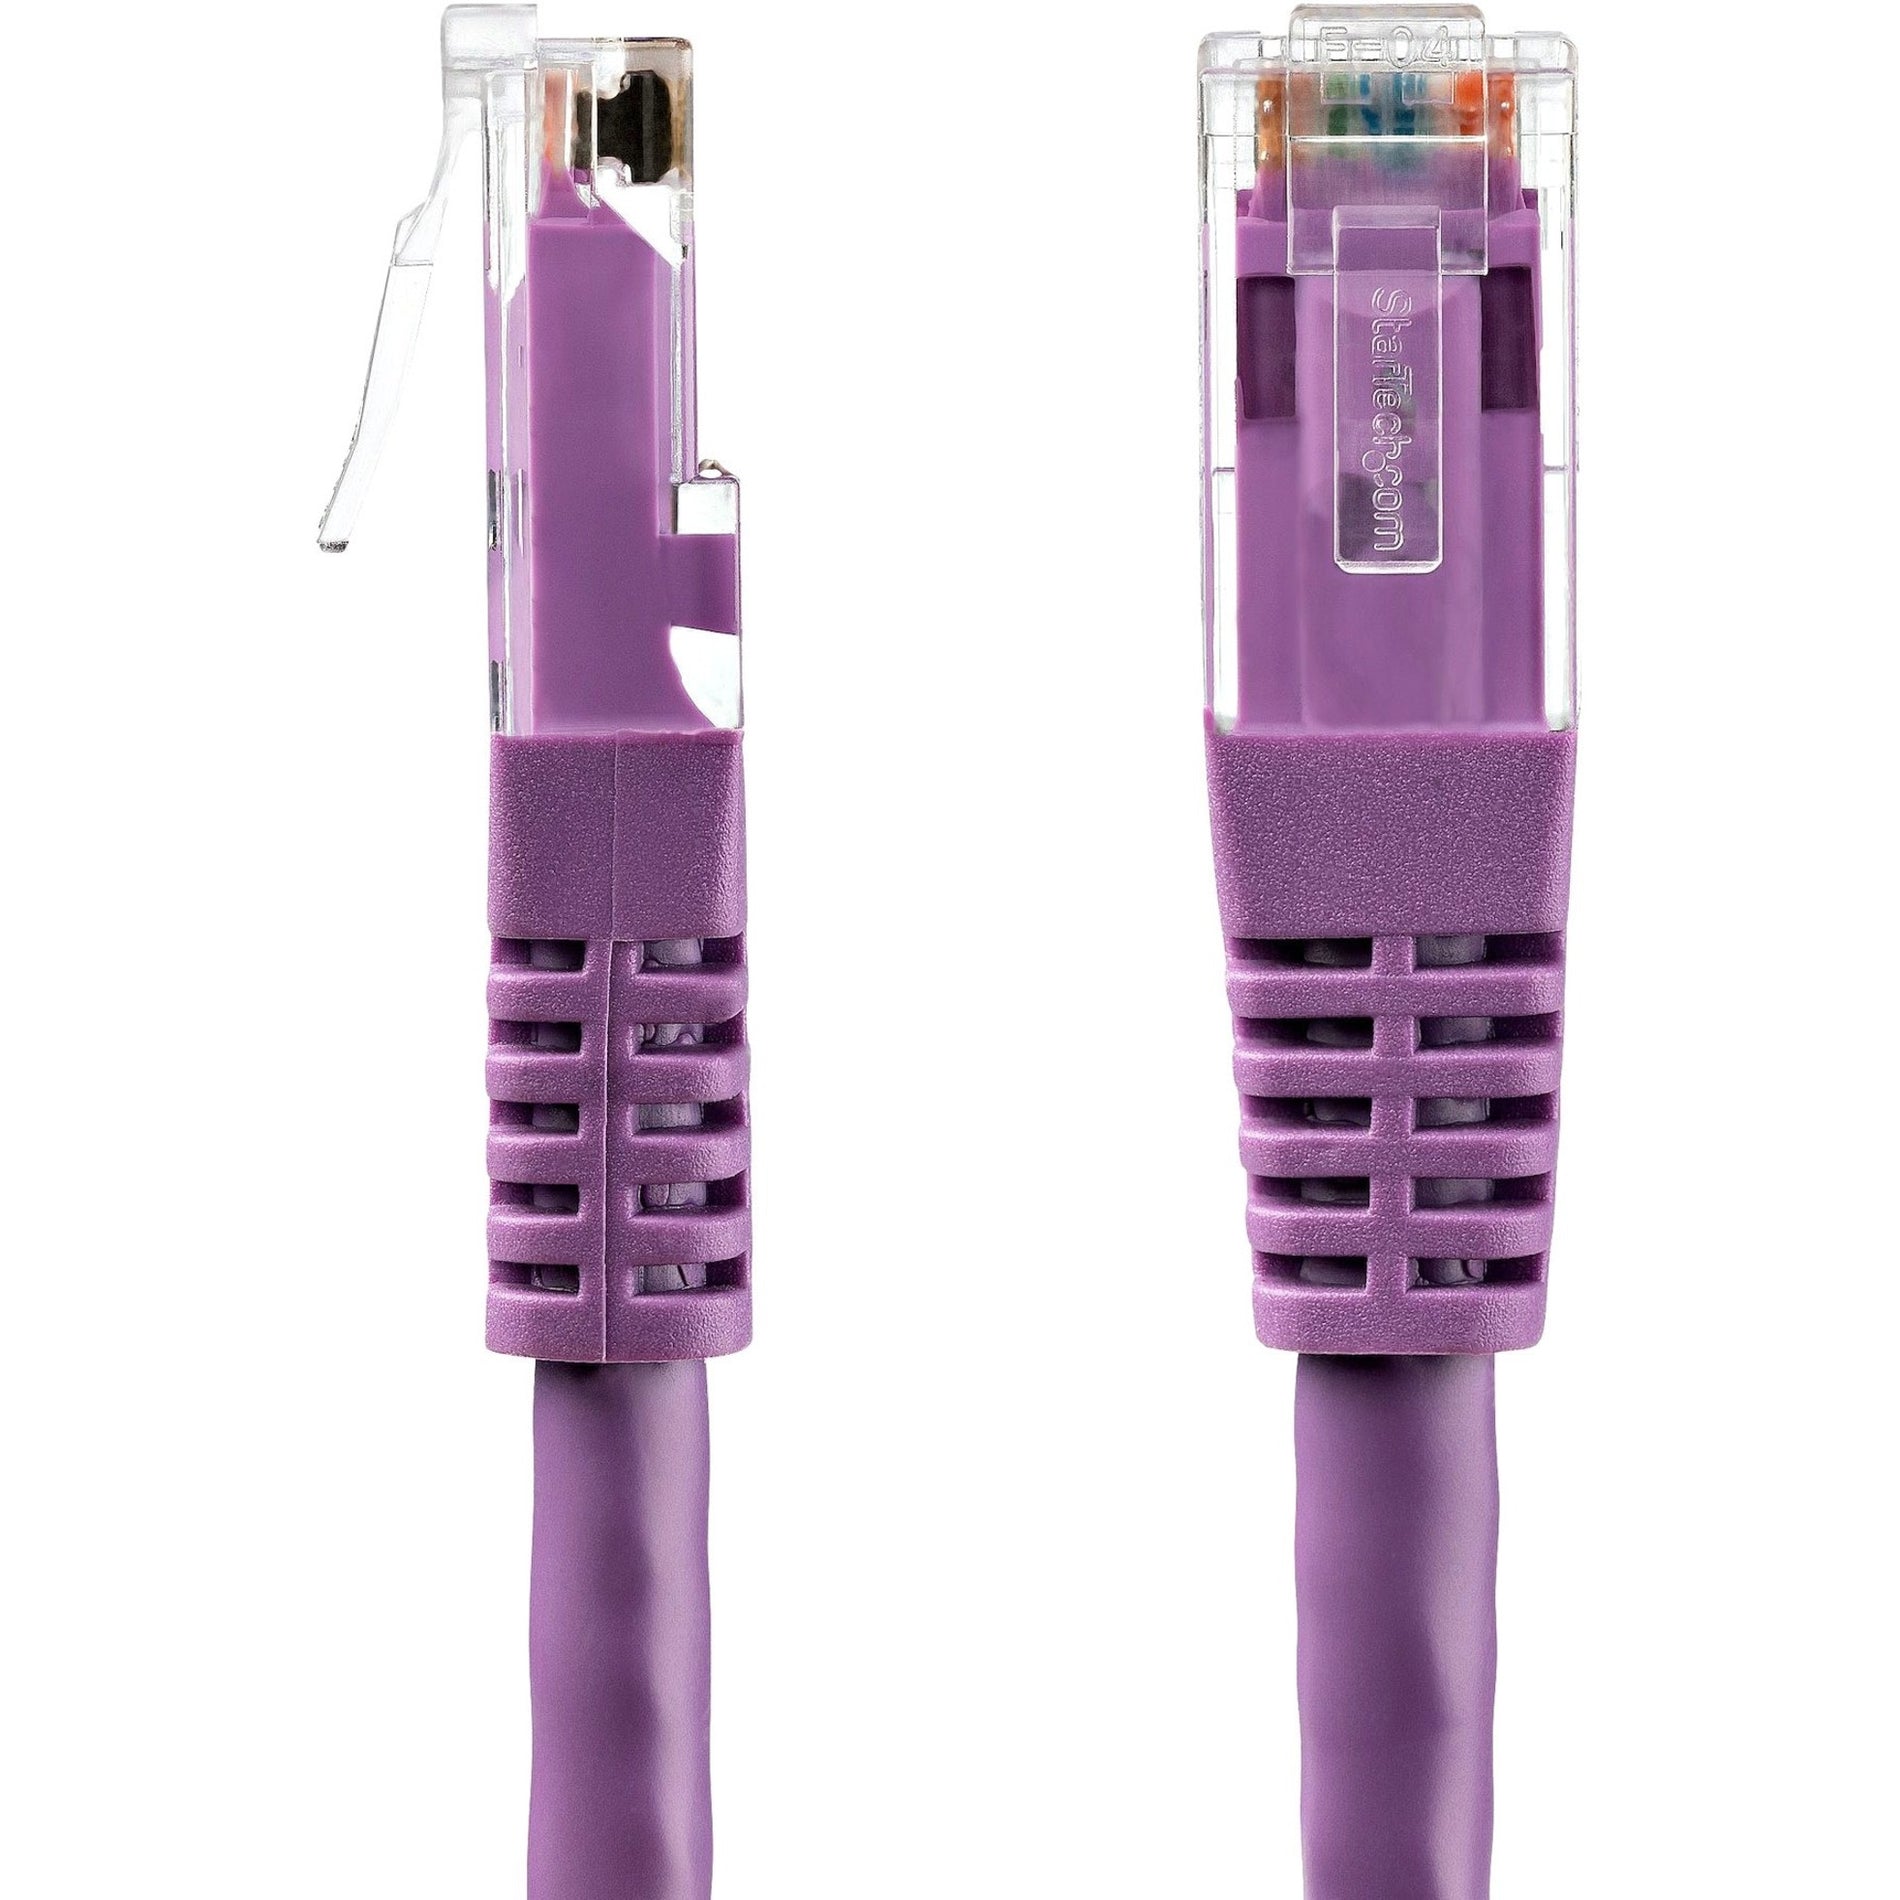 StarTech.com C6PATCH10PL 10ft Purple Cat6 UTP Patch Cable, 10 Gbit/s Data Transfer Rate, Lifetime Warranty